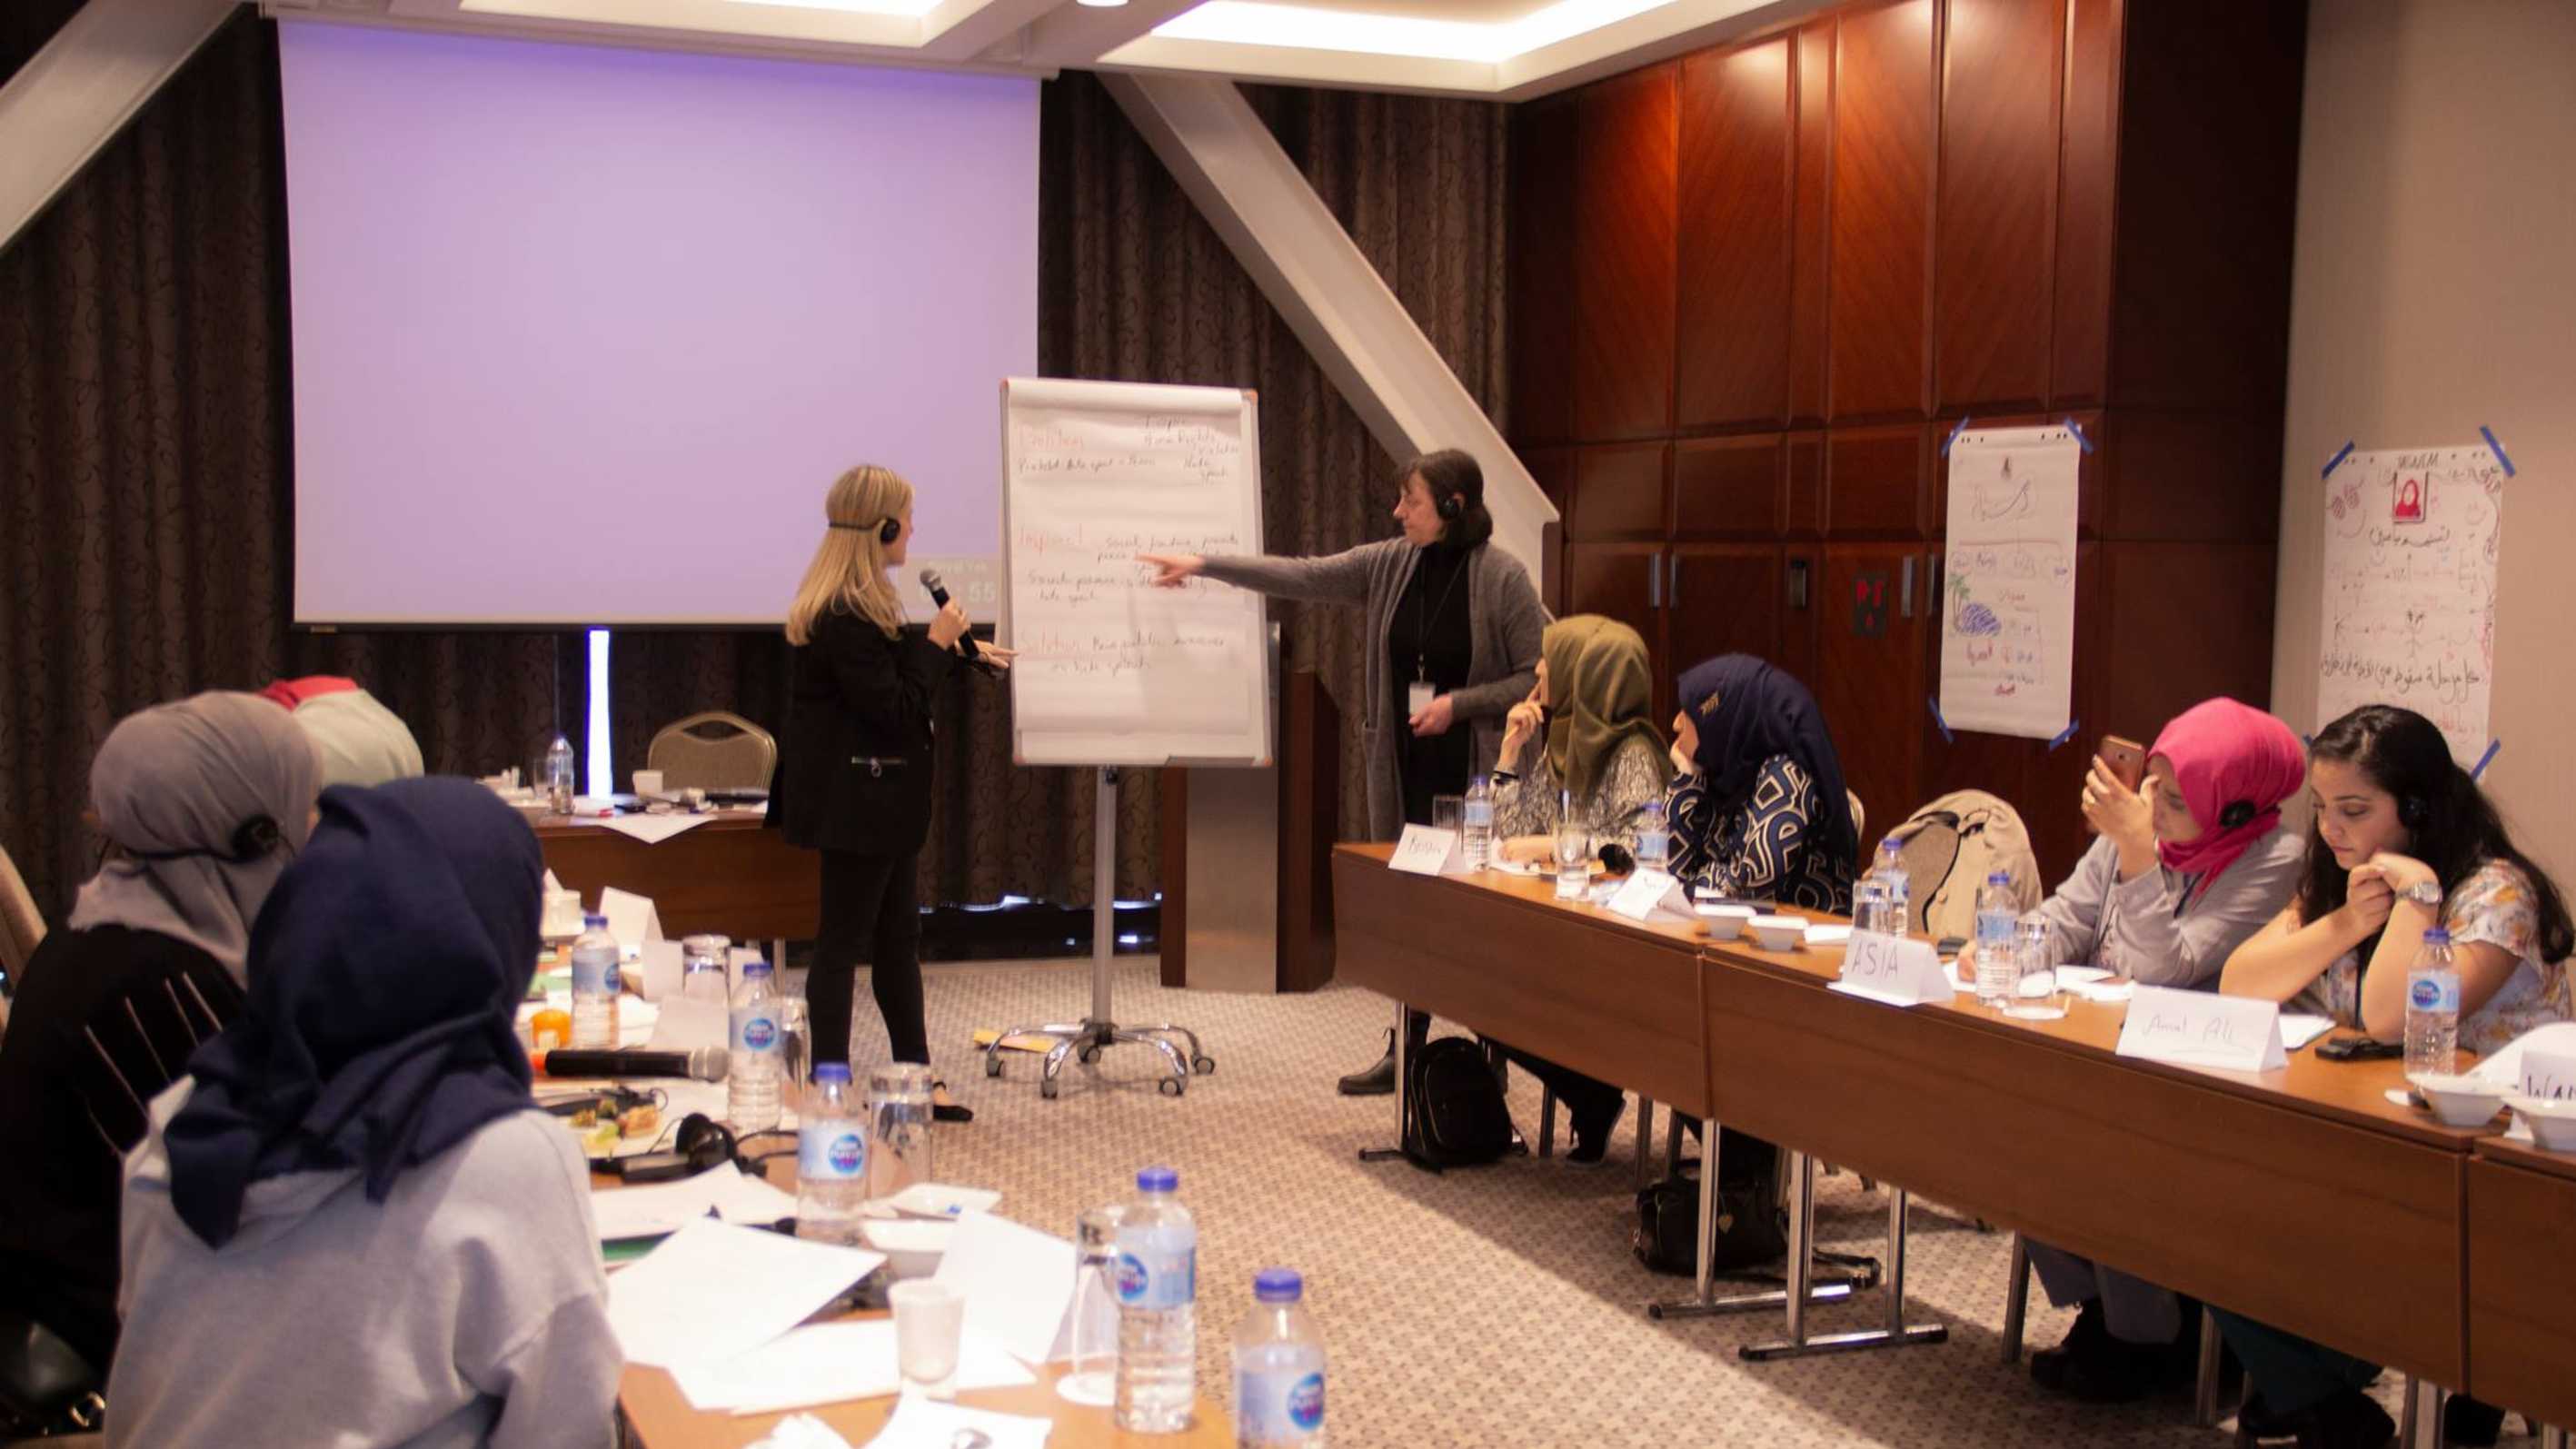 مؤسسة توكل كرمان تعقد برنامجا تدريبيا بعنوان إعلاميات من أجل السلام العادل في اليمن 